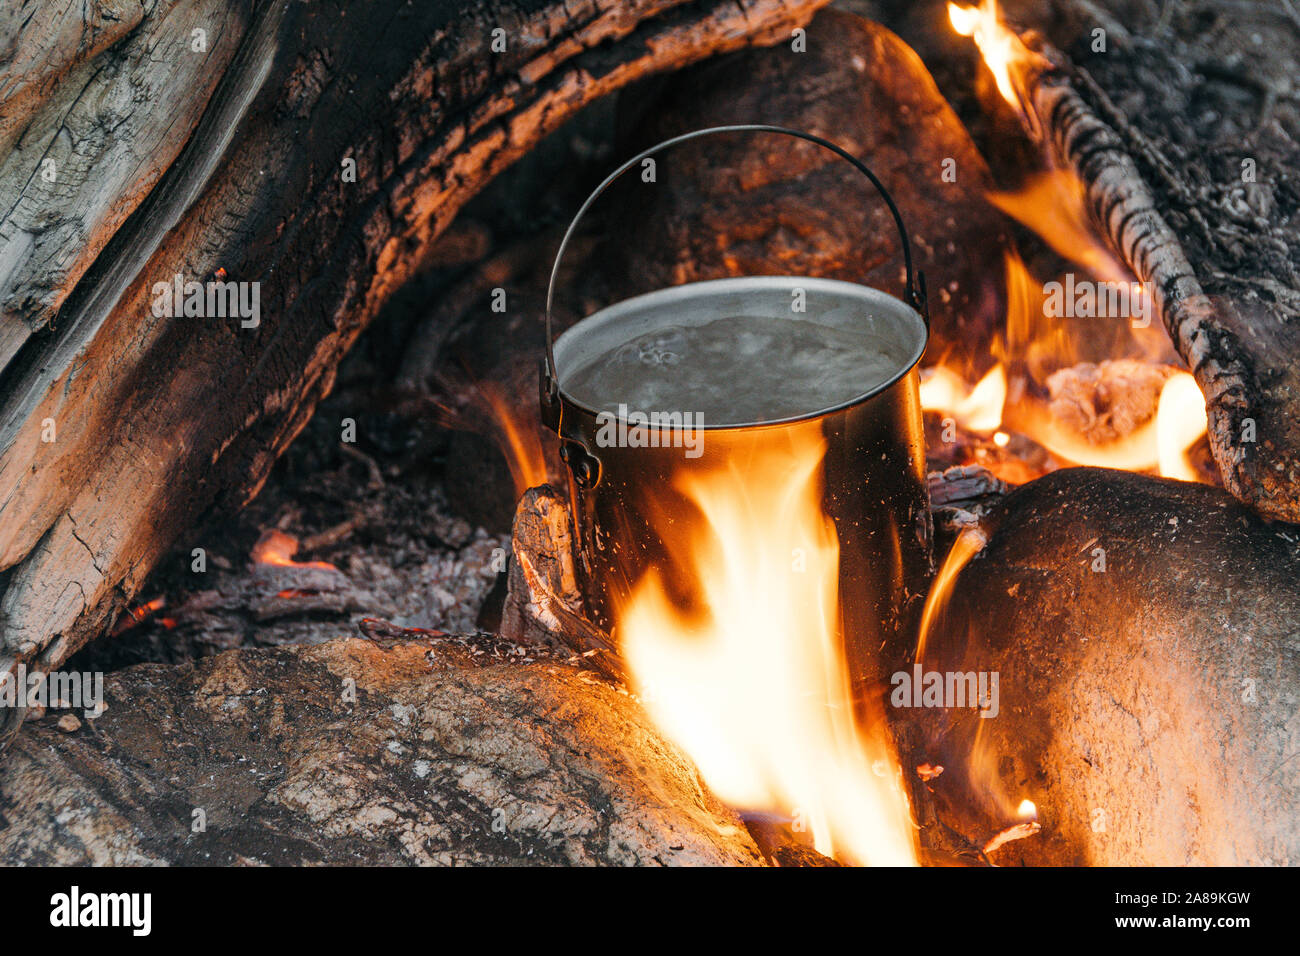 Tourist pentola sopra il fuoco. La cottura in pentole in alluminio. La sopravvivenza nel selvaggio. Foto Stock